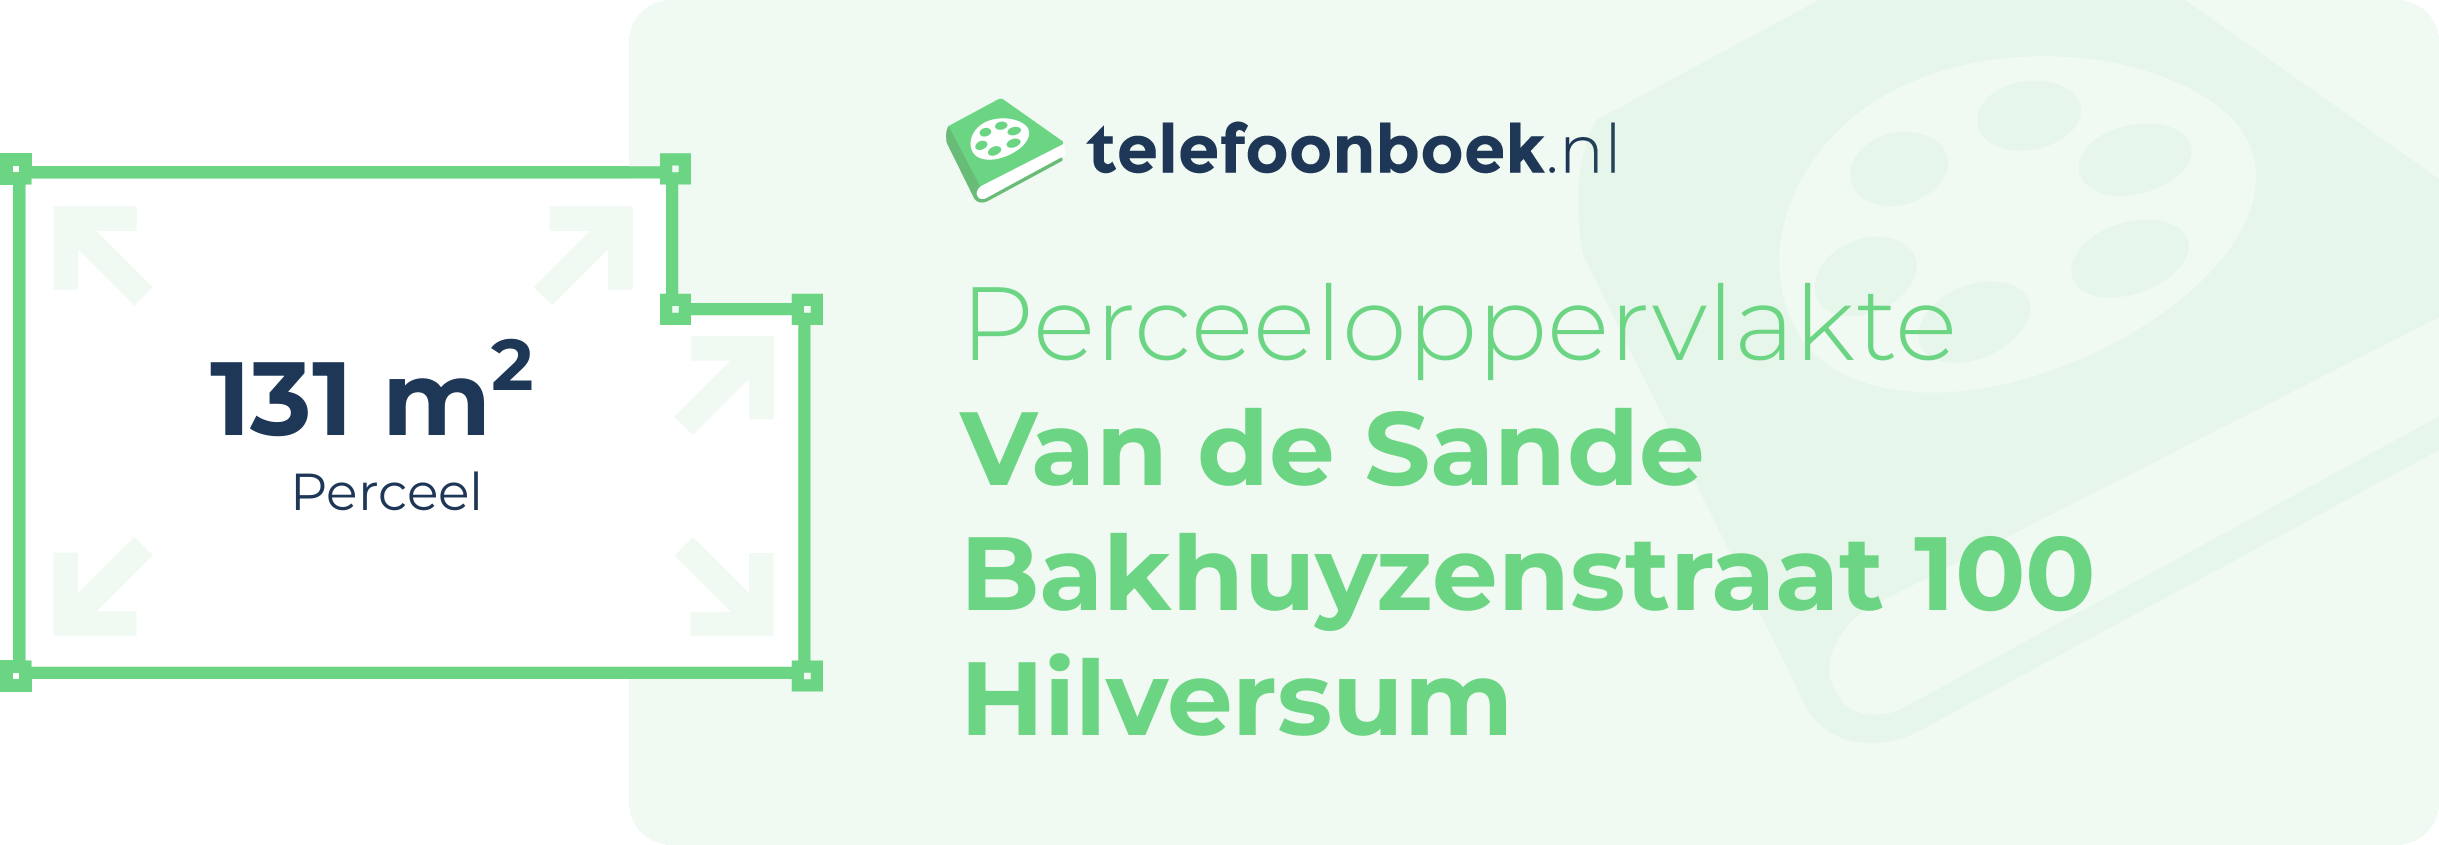 Perceeloppervlakte Van De Sande Bakhuyzenstraat 100 Hilversum